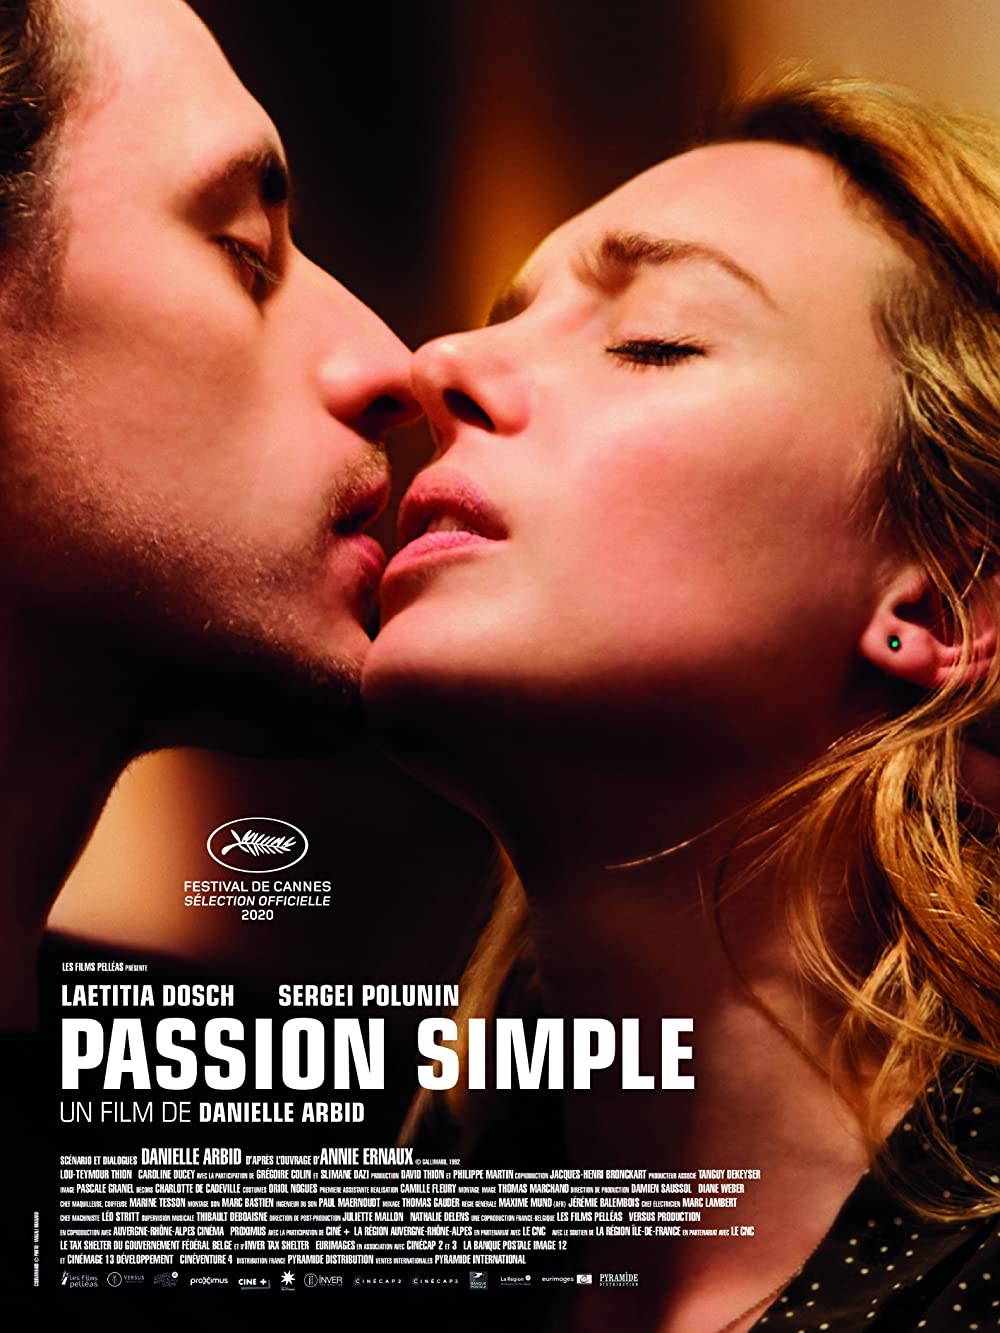 Filmbeschreibung zu Passion simple